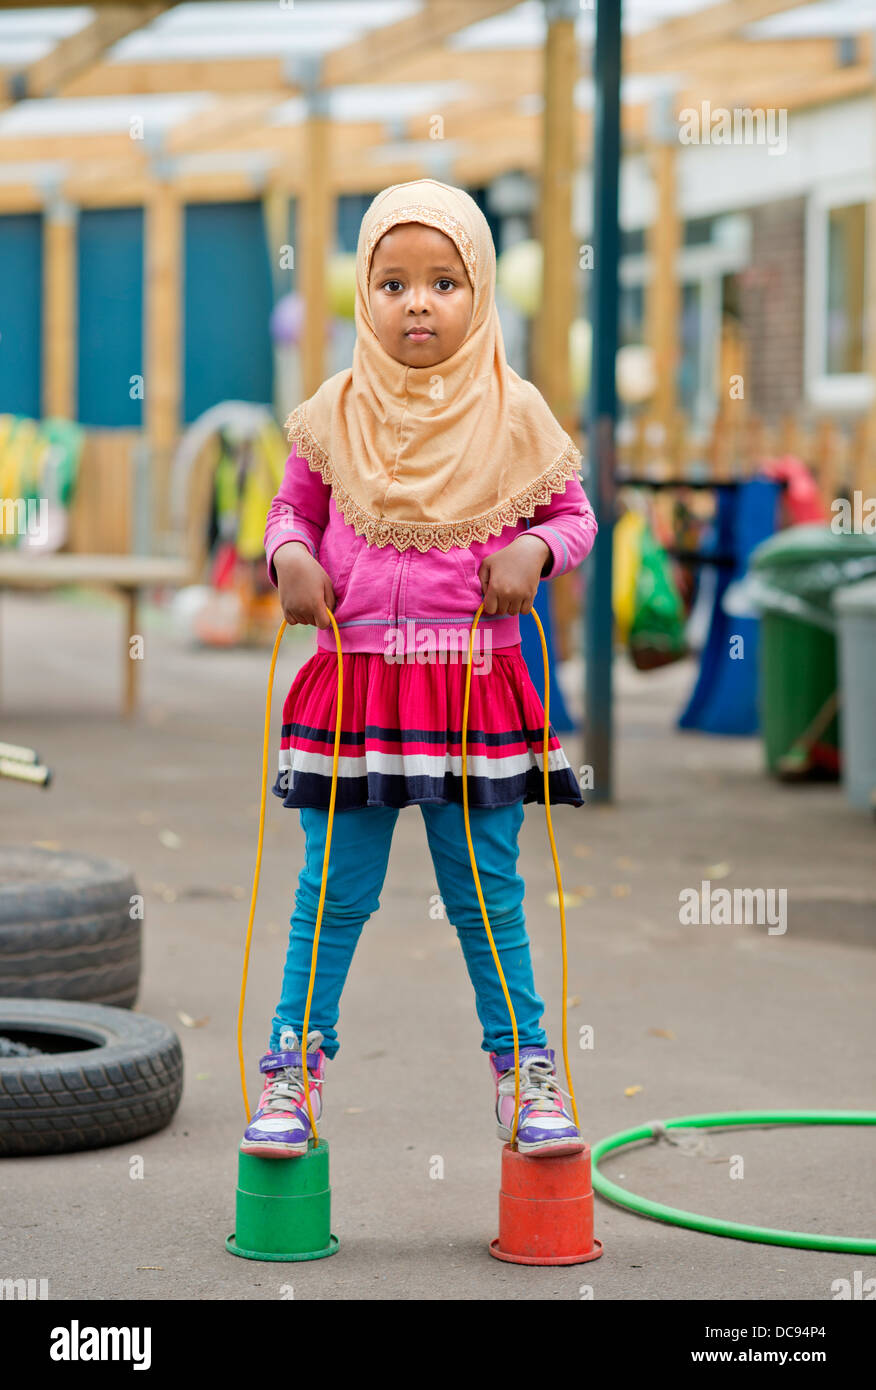 Der St.-Pauls-Kindergarten und das Kinderhaus, Bristol UK - A somalische Mädchen auf Stelzen auf dem Spielplatz spielen. Stockfoto